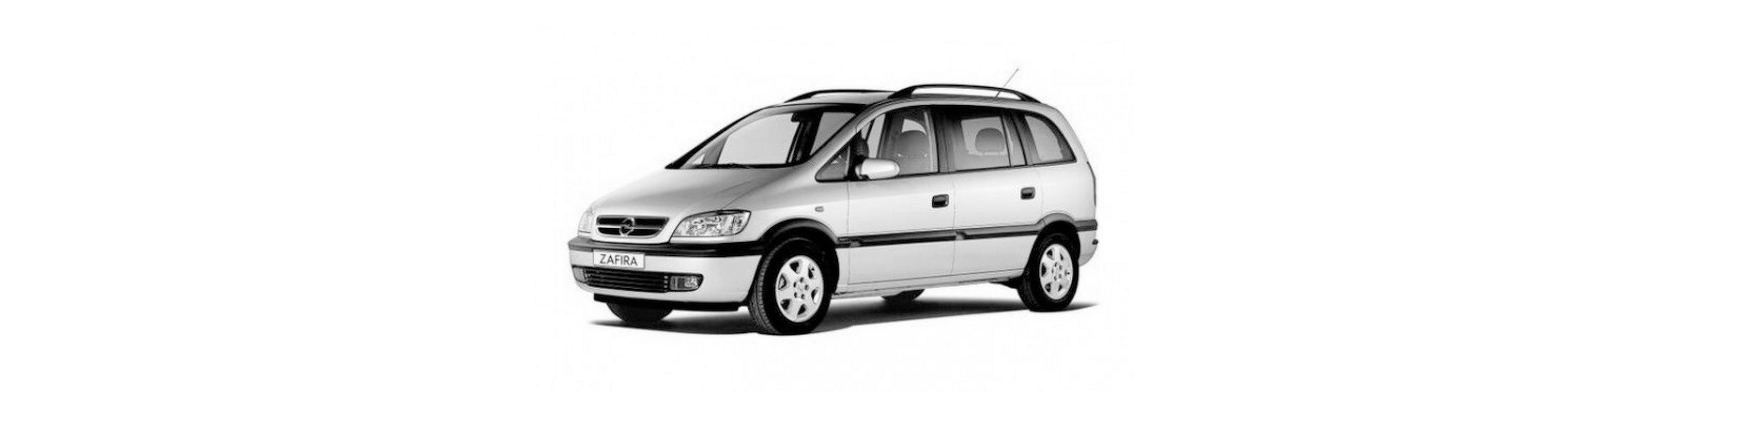 Piezas y Recambios de Opel Zafira A (T98) de 1999 a 2005 | Veramauto.es